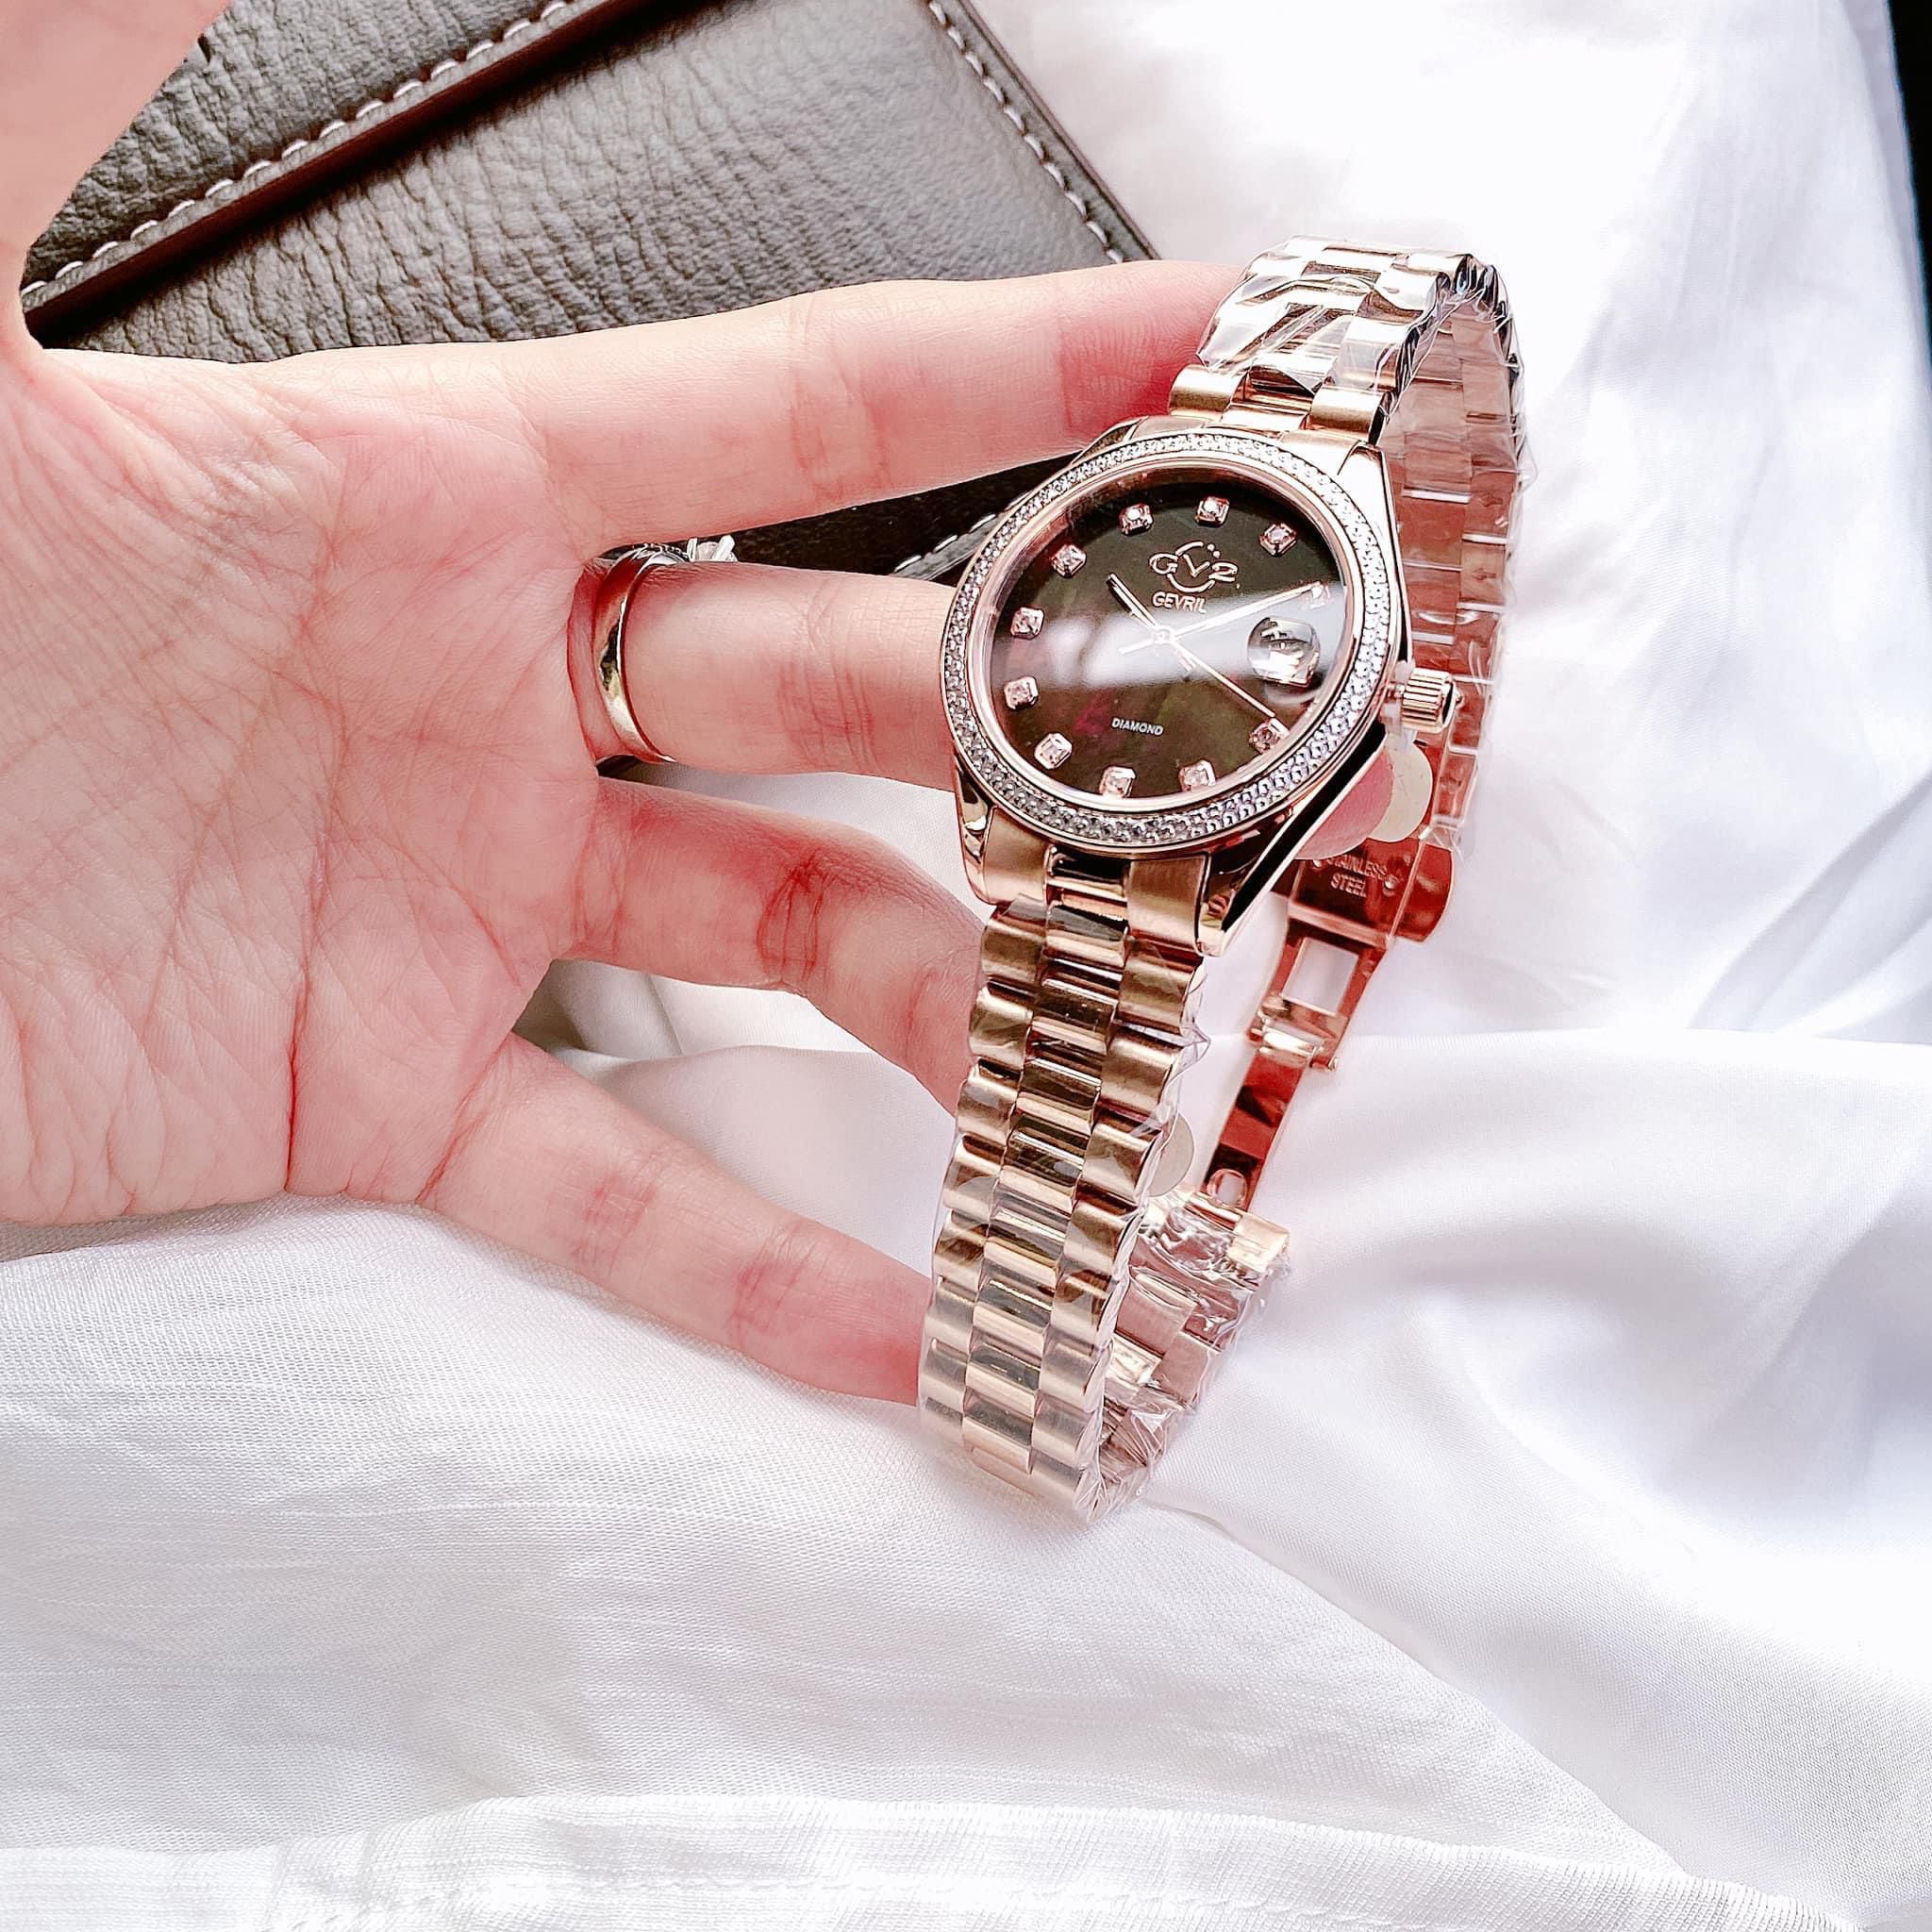 Đánh giá đồng hồ GV2 BY GEVRIL Turin Women's Watch: Thiết kế cổ điển, tính năng hiện đại, bộ máy hoạt động tốt với giá thành hợp lý